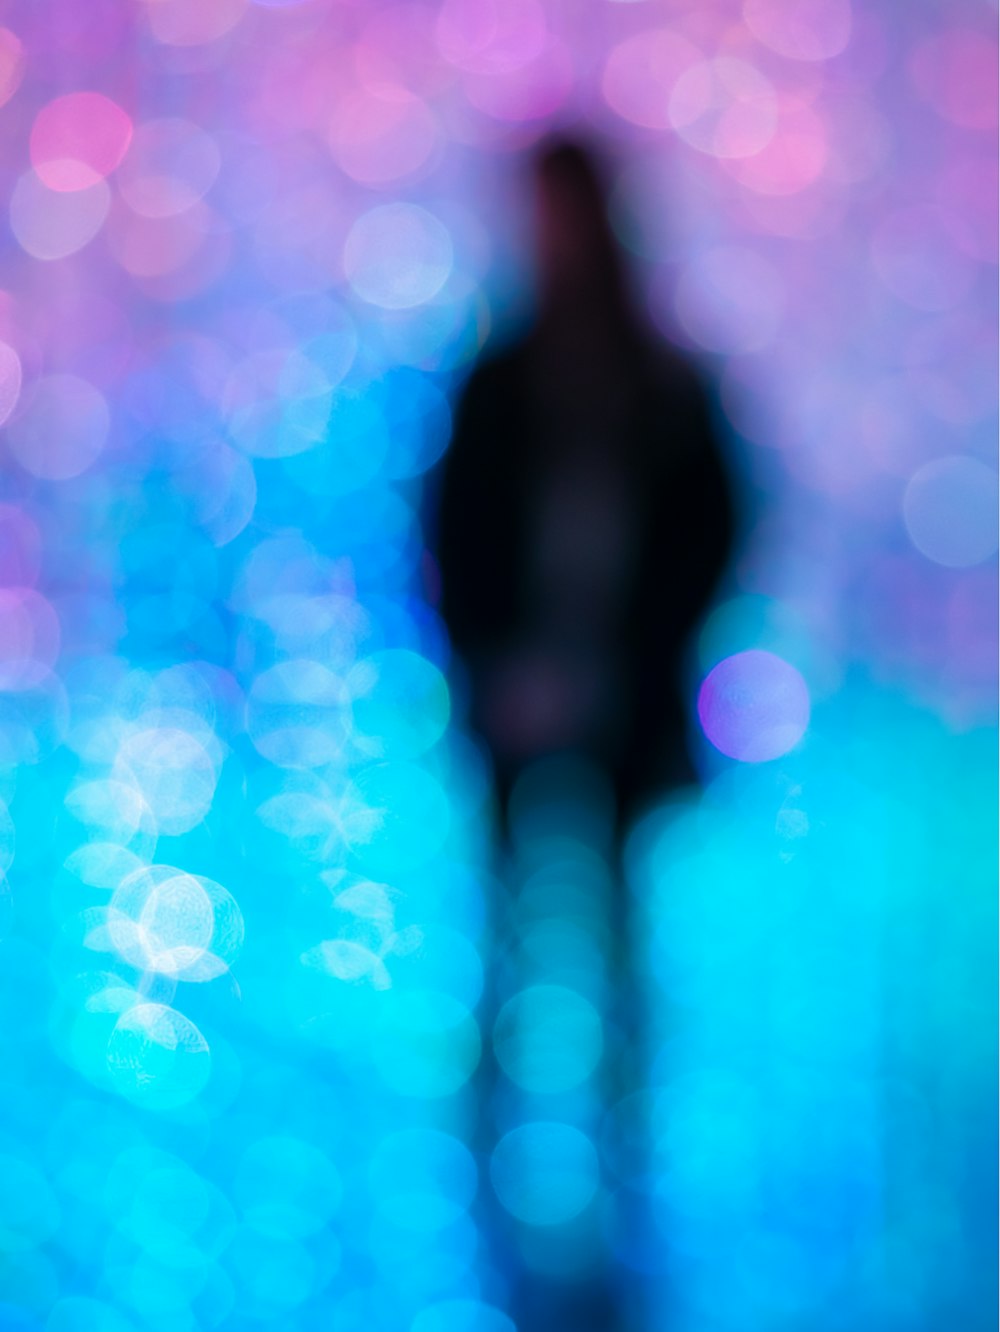 une image floue d’une personne debout devant un fond bleu et rose